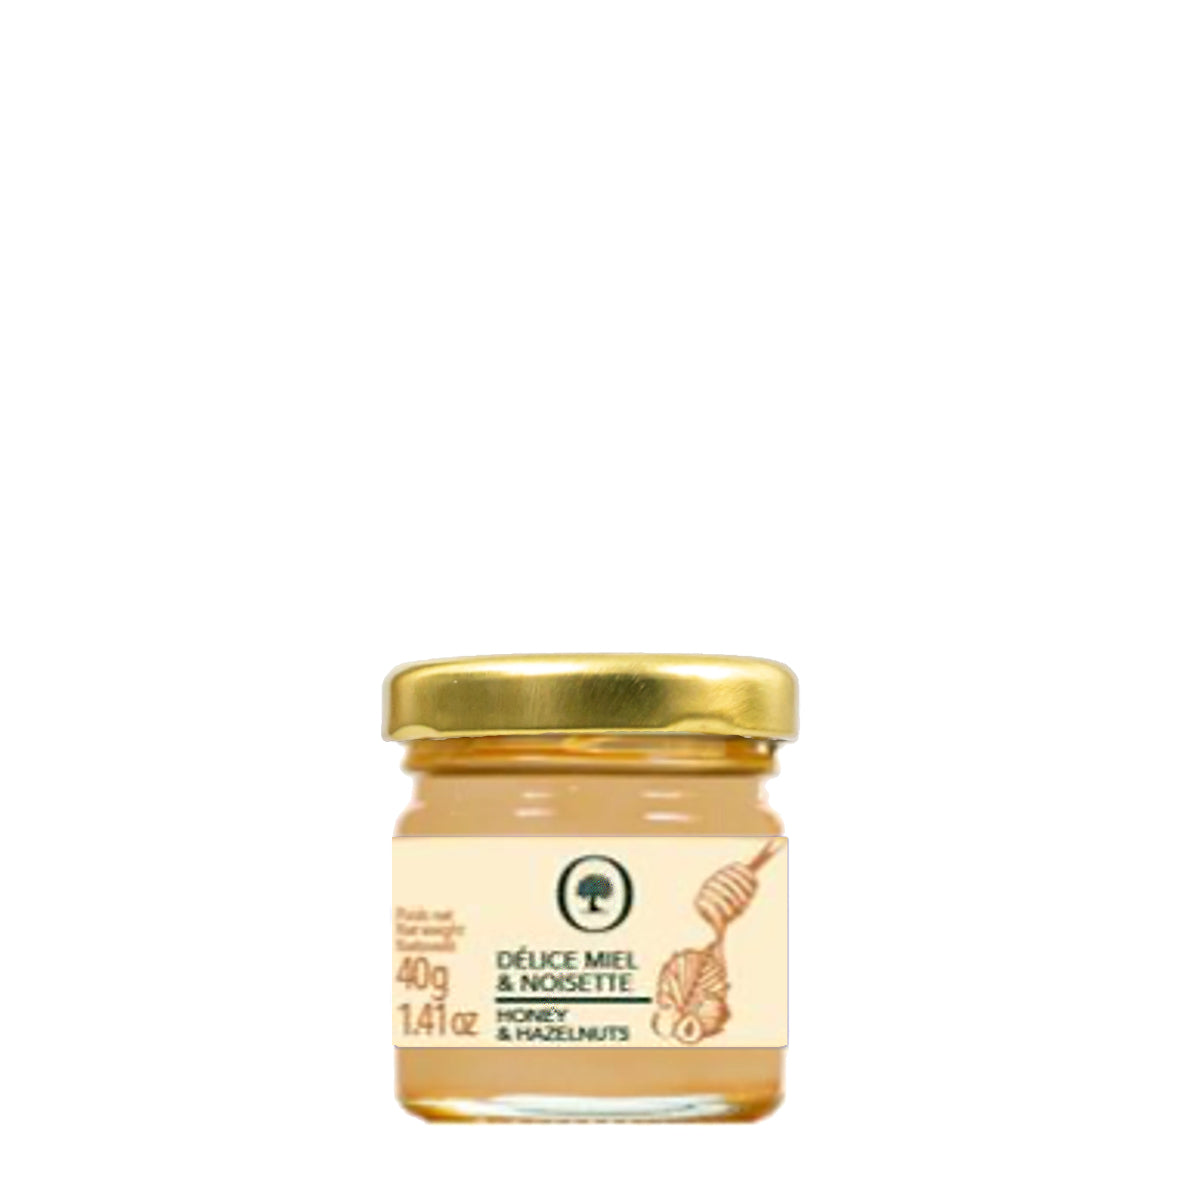 Mini honning og hasselnøddecreme fra Oliviers & Co